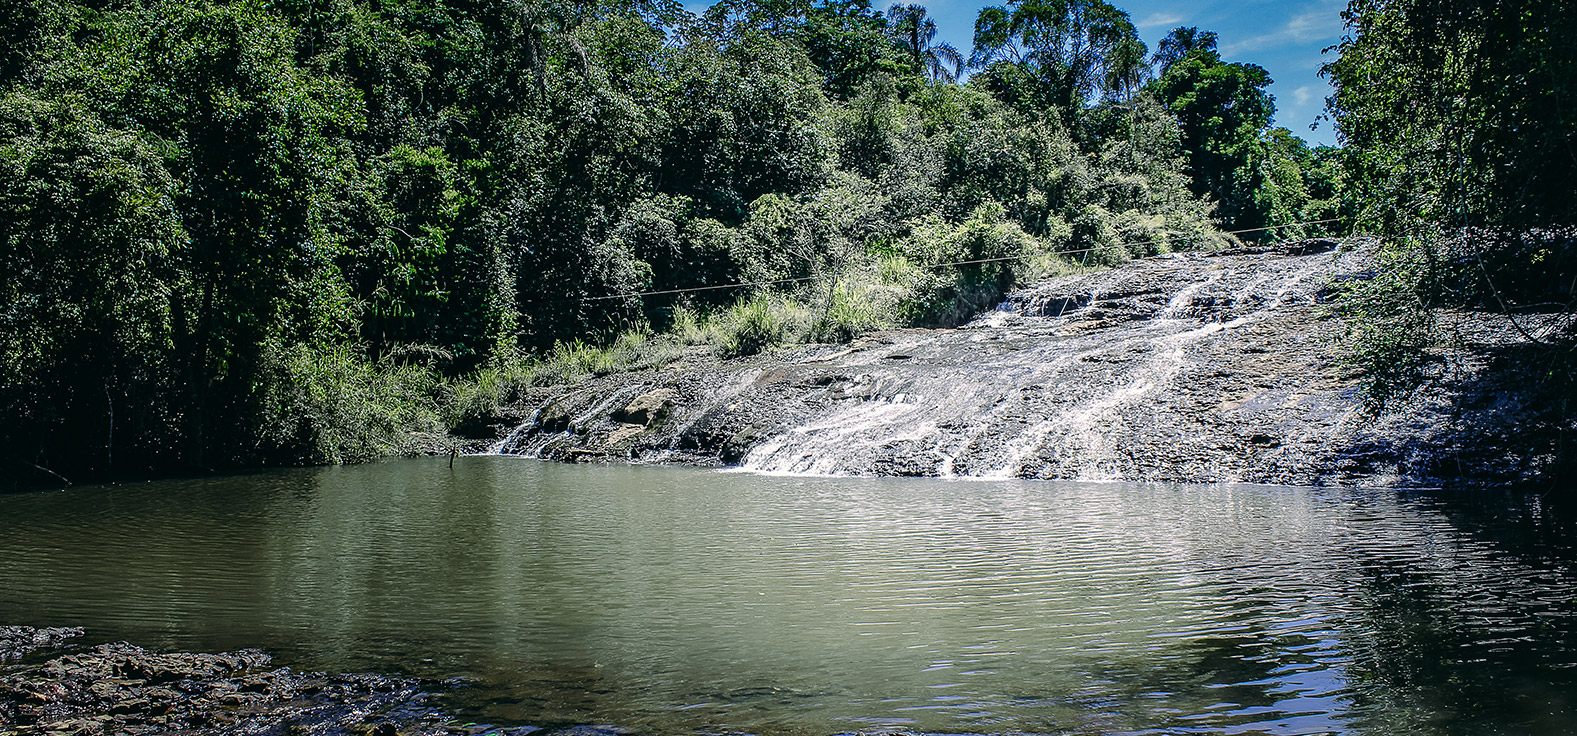 Cachoeira Escorregador em Brotas | Portal Serra do Itaquerí